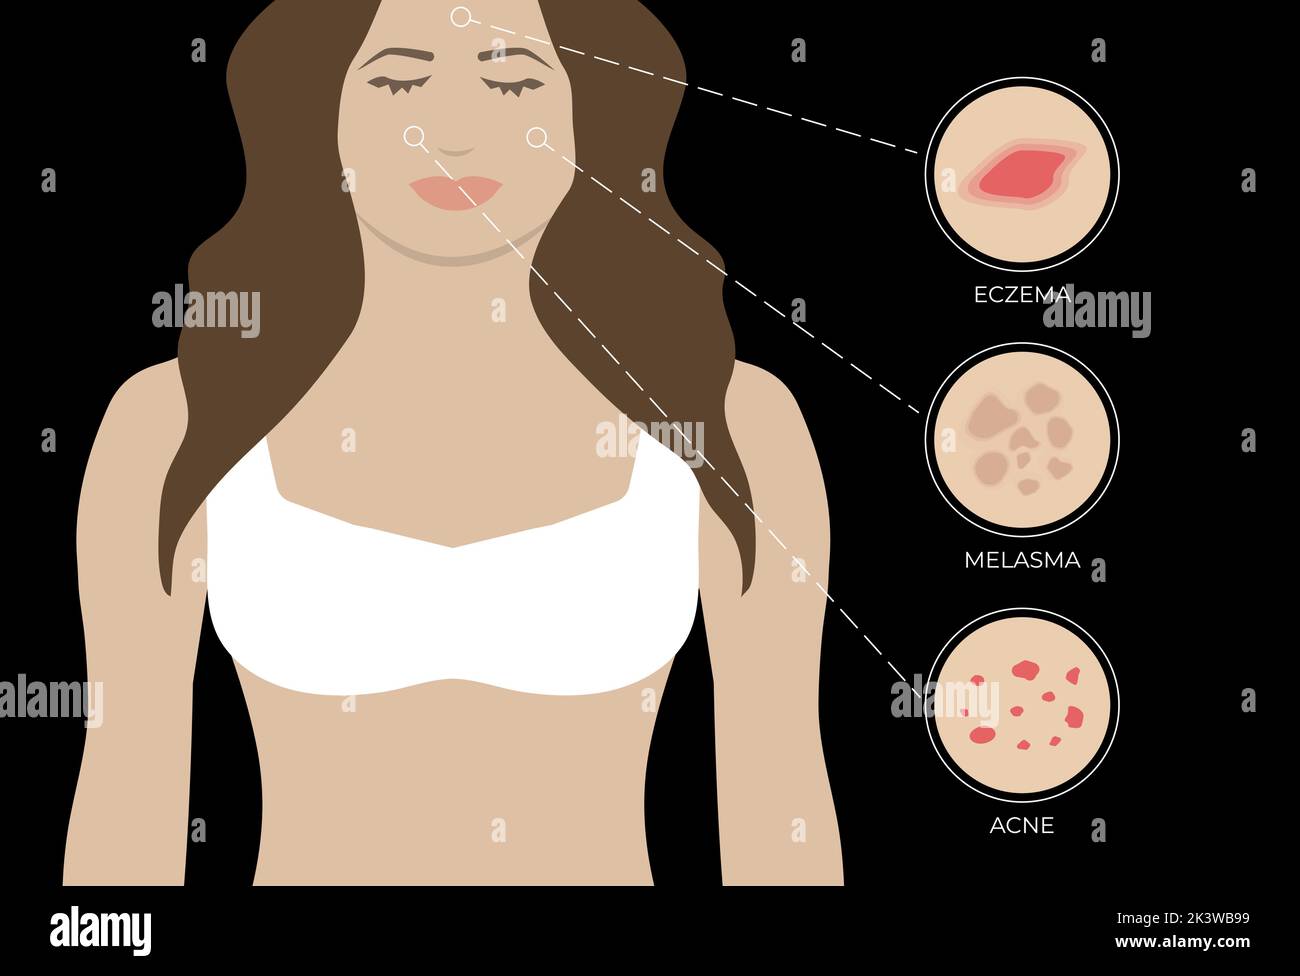 Illustration de l'eczéma, de l'acné et du mélasma avec la femme sur fond noir Illustration de Vecteur